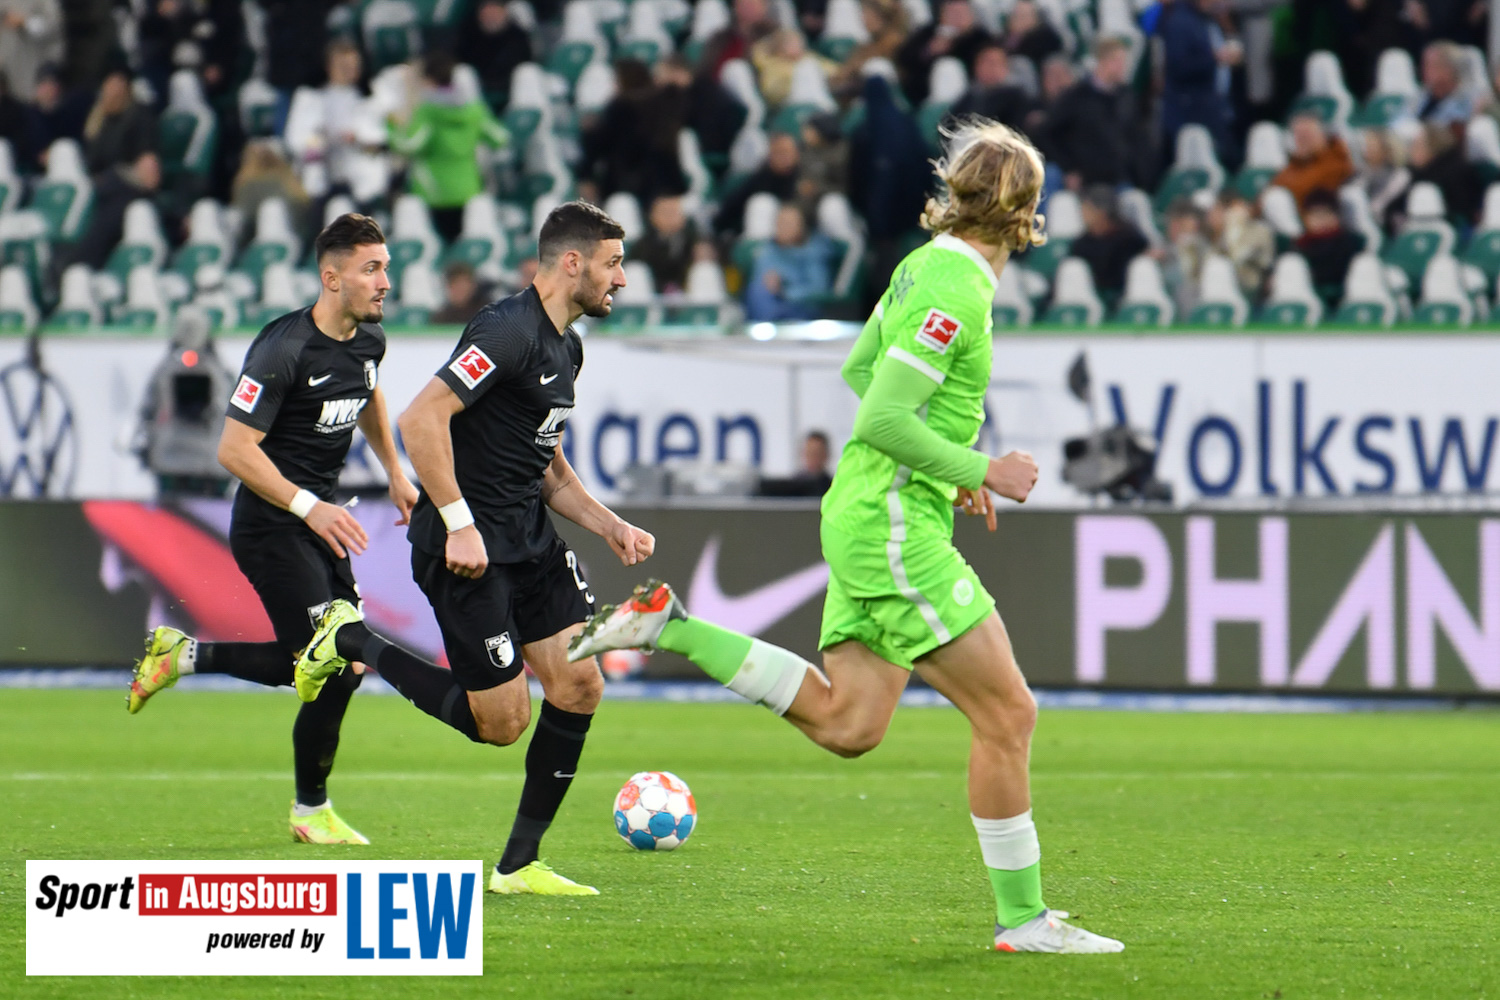 VfL Wolfsburg - FCA 06.11.21 - 28